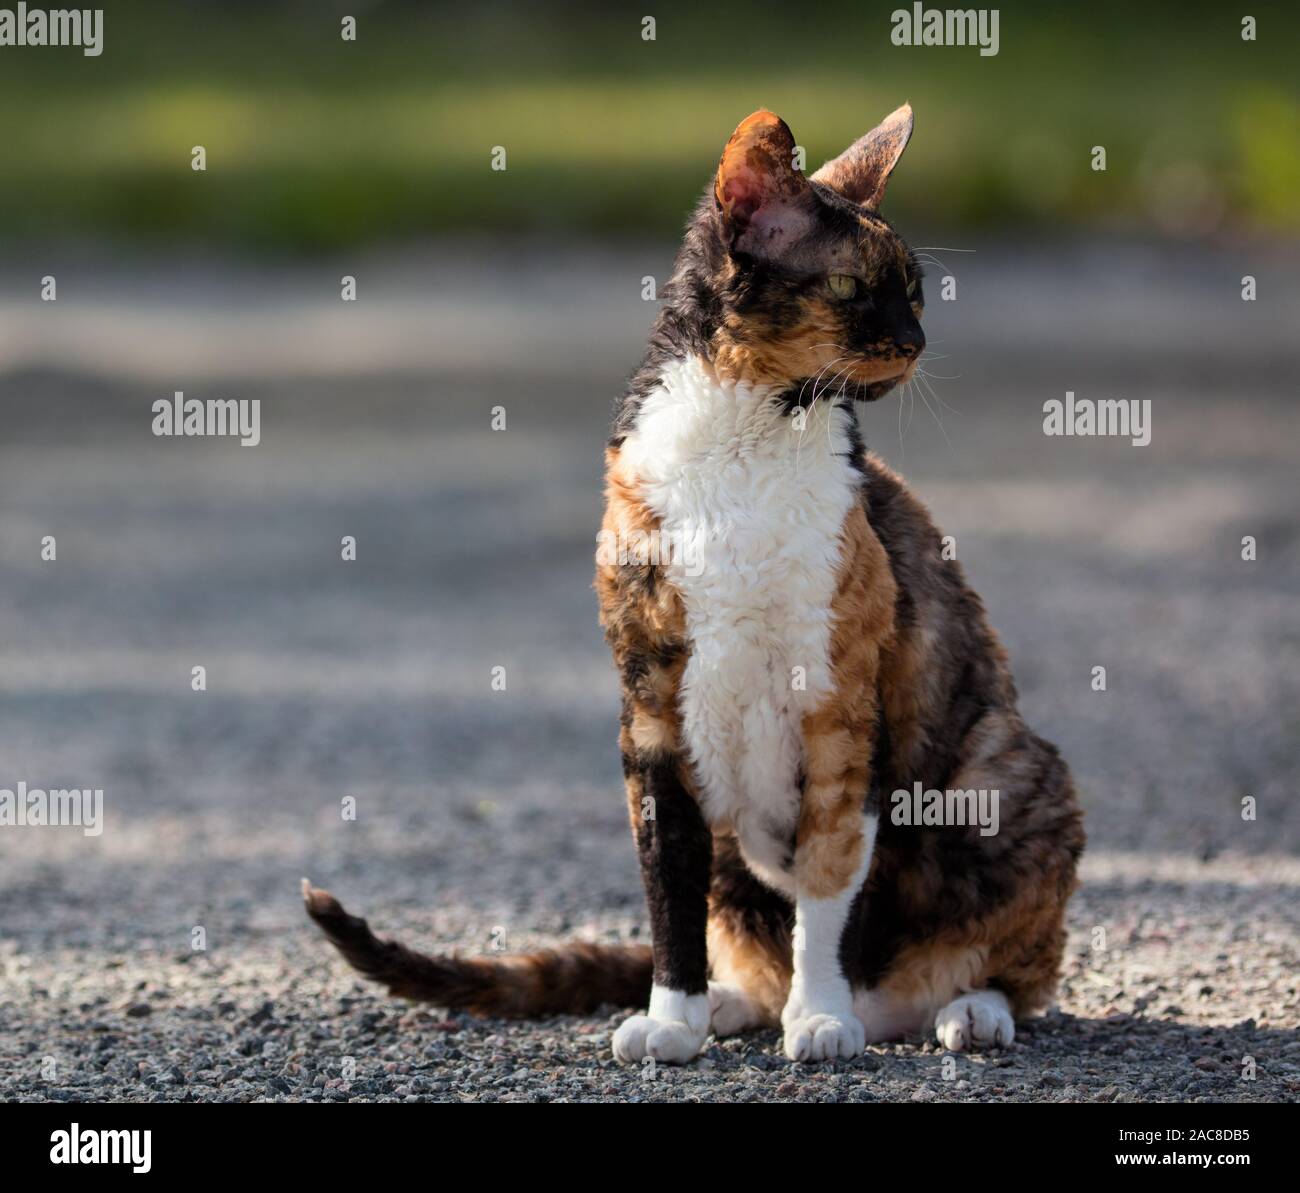 Cornish Rex color gato sentado en la grava y mirando alrededor Foto de stock